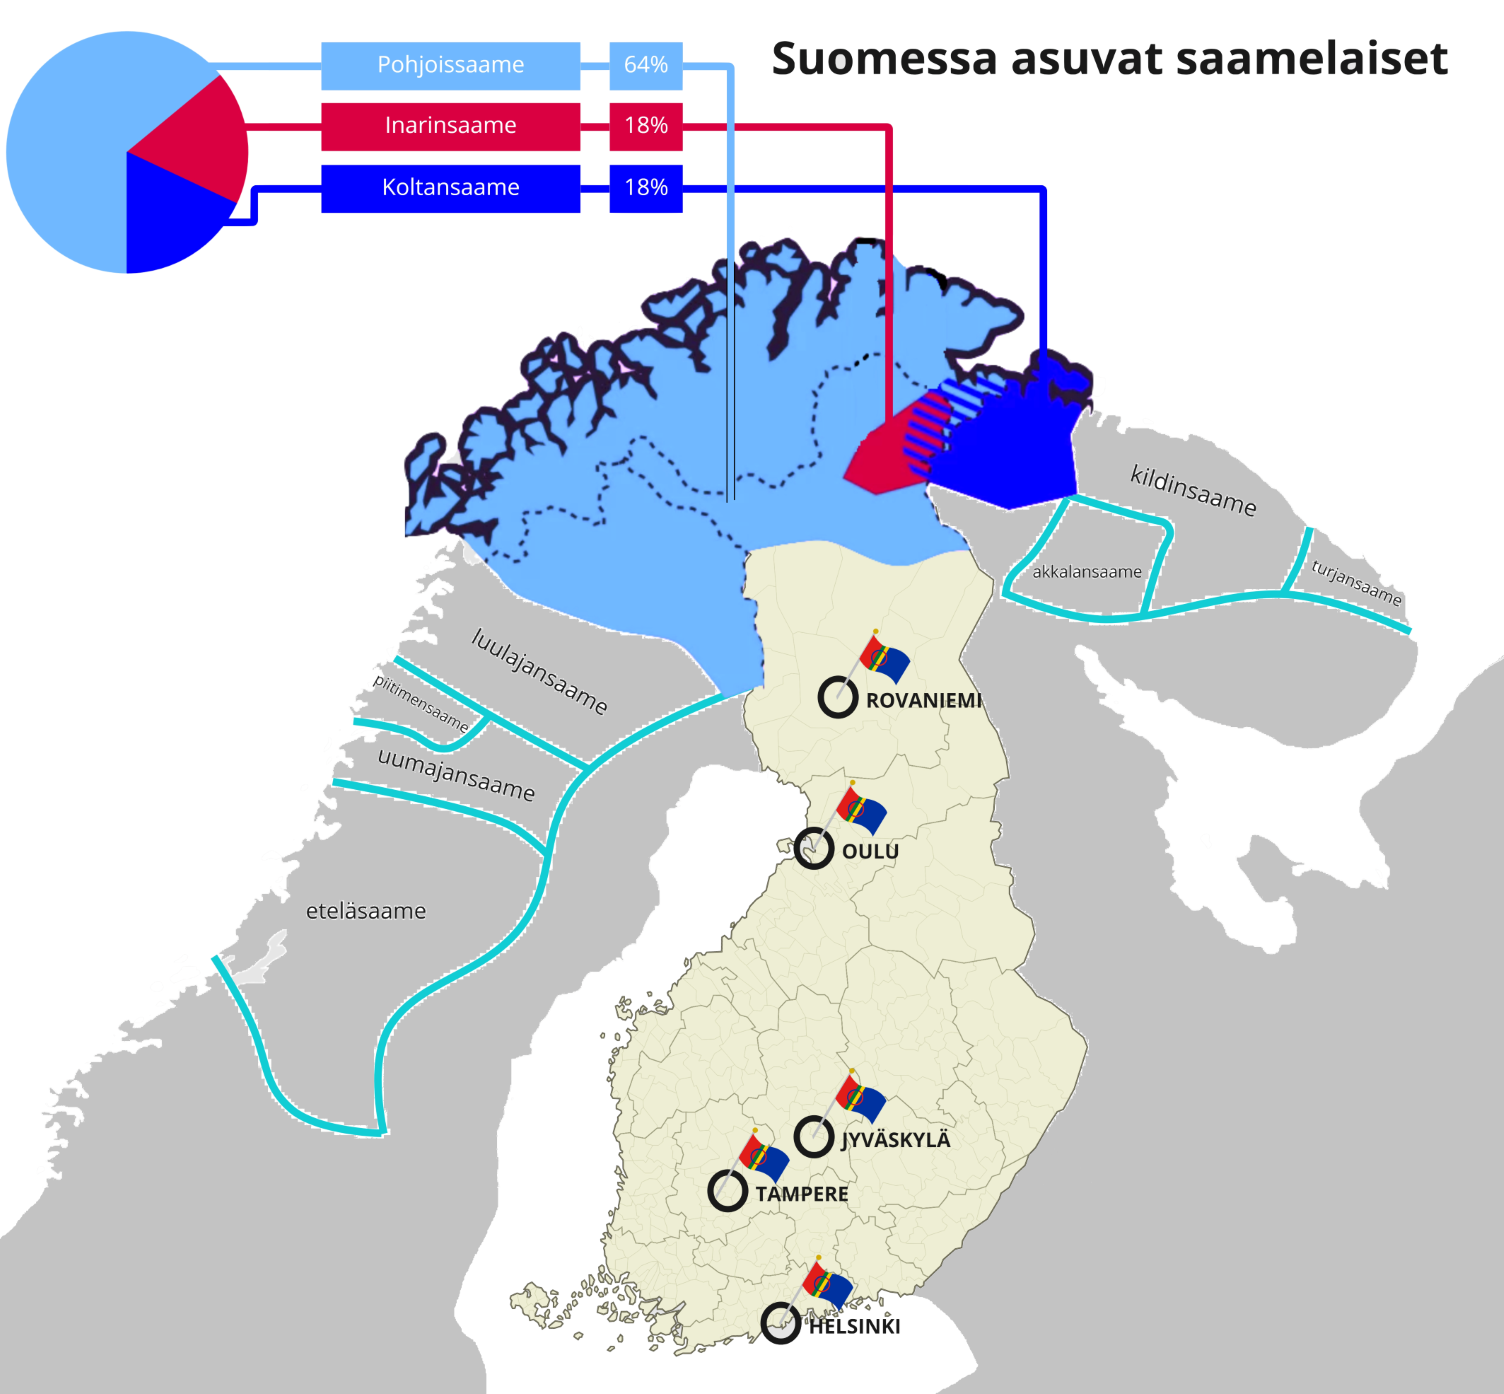 Pohjoismaiden kartta, jossa Suomen valtio, sekä Suomessa puhutut saamen kielet. Vaaleansinisellä pohjoissaame, joka ulottuu Norjaan ja Ruotsiin, sekä koko saamelaisten kotiseutualueelle. Pohjoissaamea puhuu 64 % Suomen saamenkielisistä. Inarinsaame kartassa punaisella. Inarinsaamea puhutaan Inarin kunnassa. Inarinsaamea puhuu 18 % saamenkielisistä Suomessa. Koltansaame tummansinisellä. Koltansaamea puhutaan Venäjällä ja Suomessa Inarin kunnan itä-pohjoisosissa. Koltansaamea puhuu 18 % Suomen saamenkielisistä.